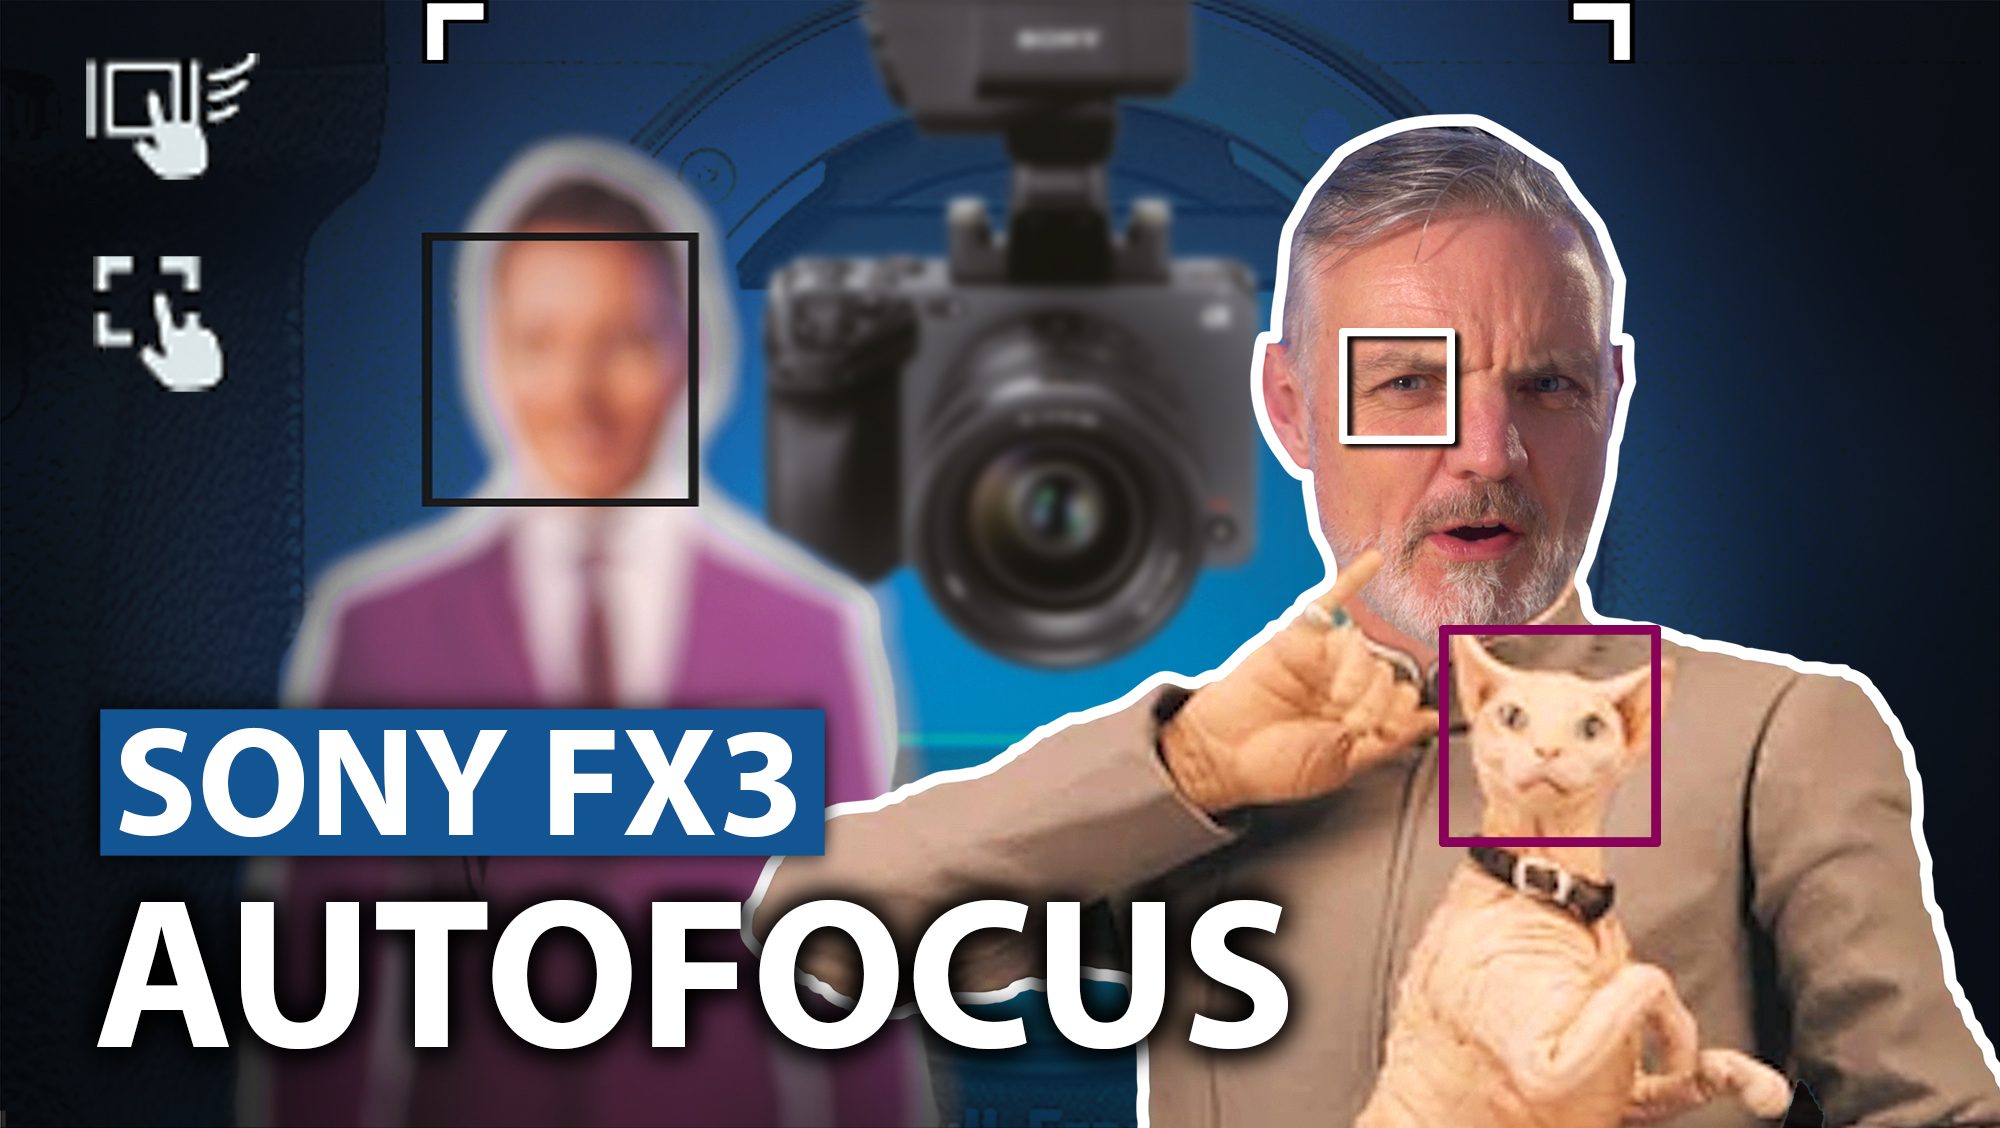 Sony FX3 Autofocus Explained